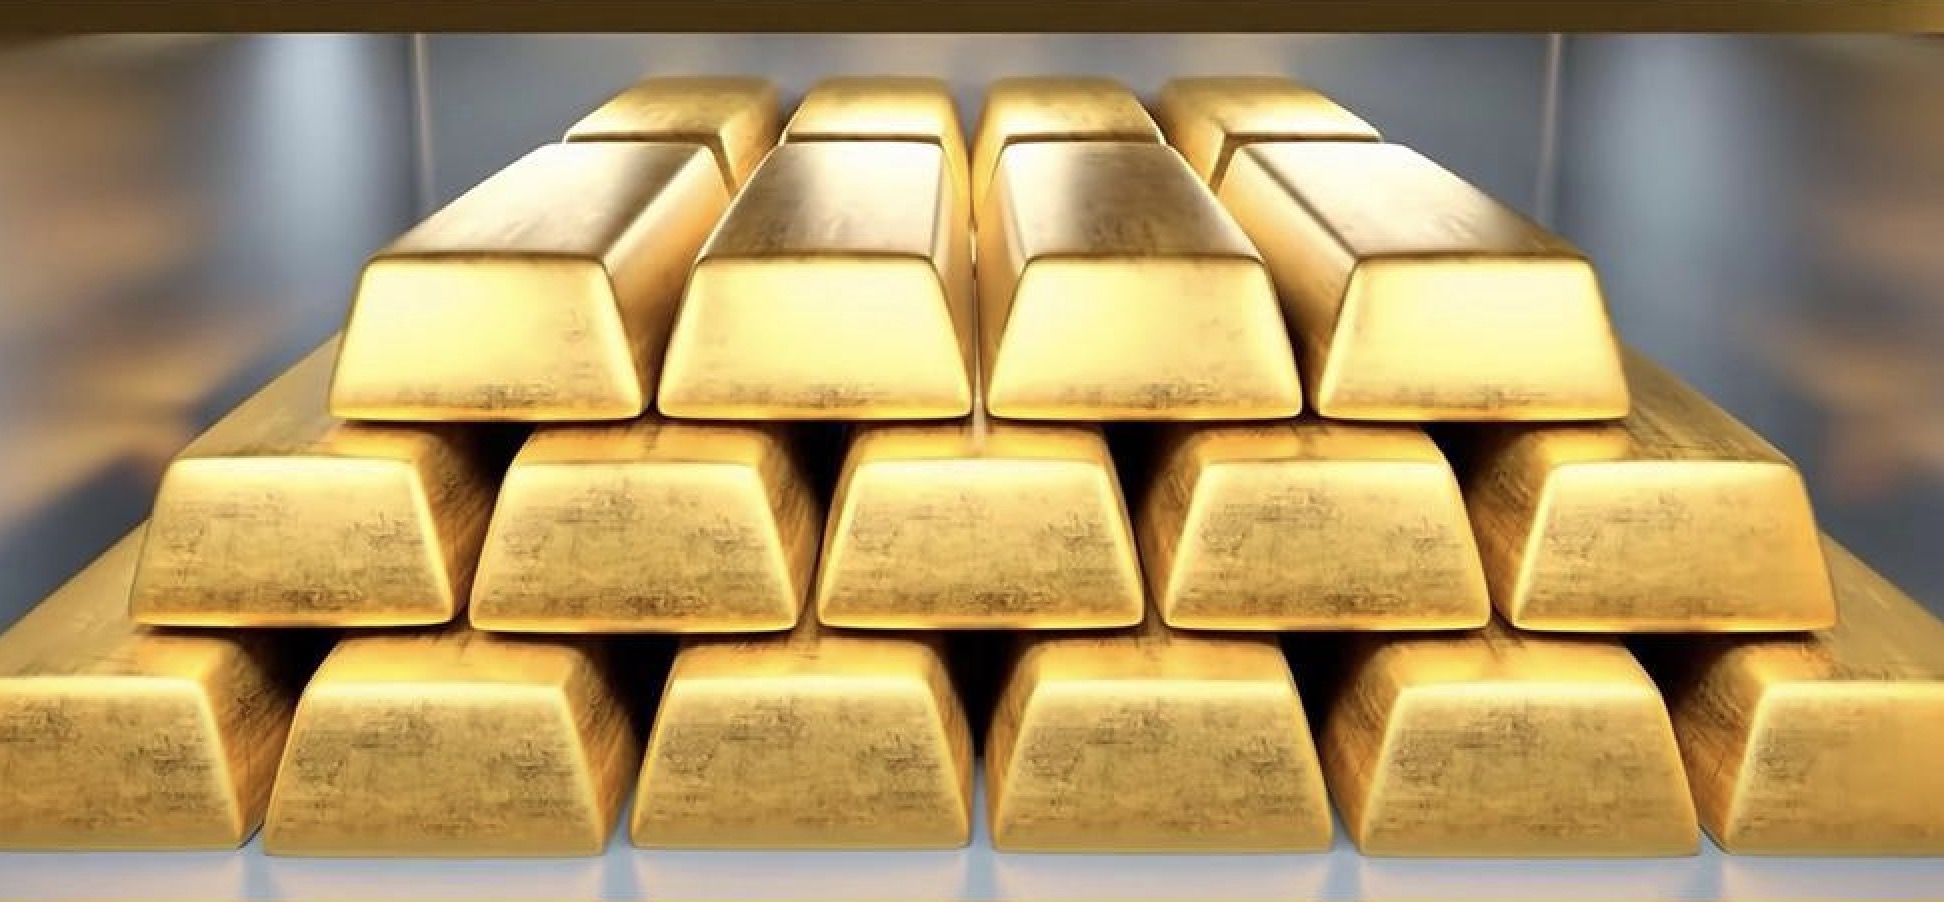 คำเตือนการซื้อขายทองคำ: การเลือกตั้งในฝรั่งเศสก่อกวน ราคาทองคำอยู่ภายใต้แรงกดดันเล็กน้อย และตลาดกระทิงยังคงมองไปที่ 2450